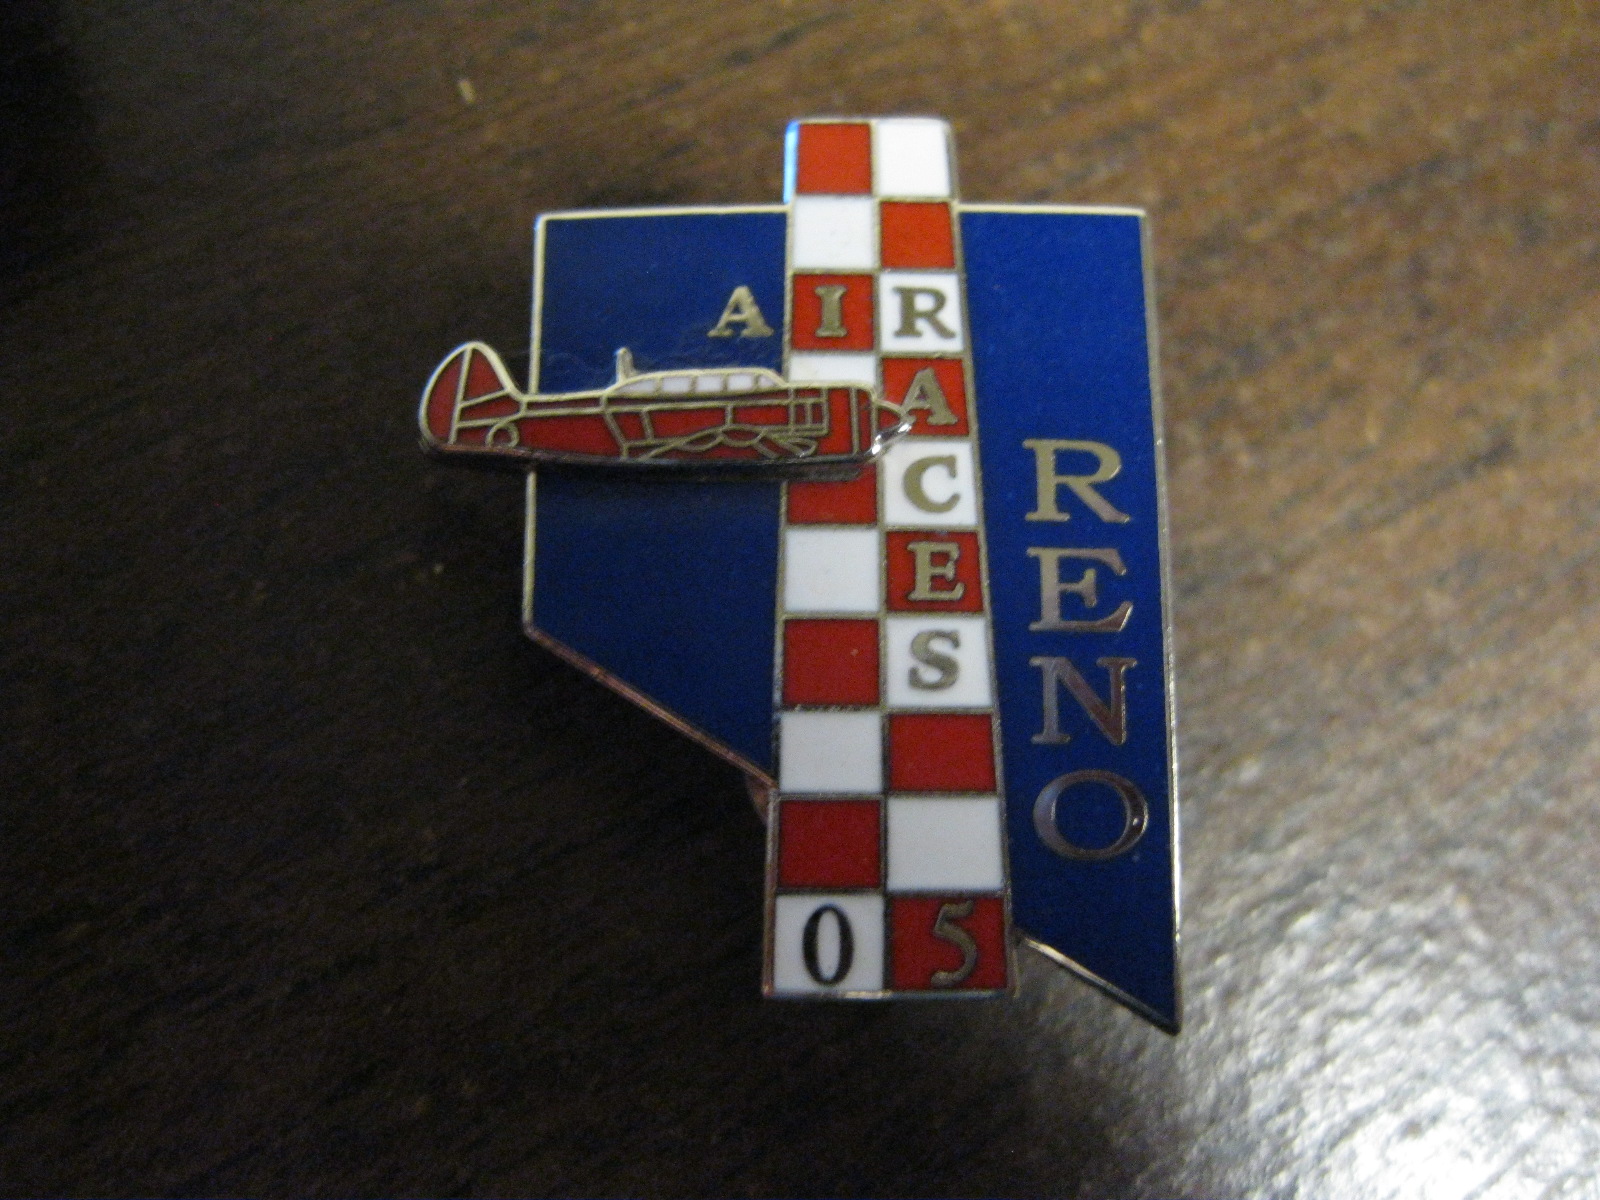 Reno Air Race pin 2005